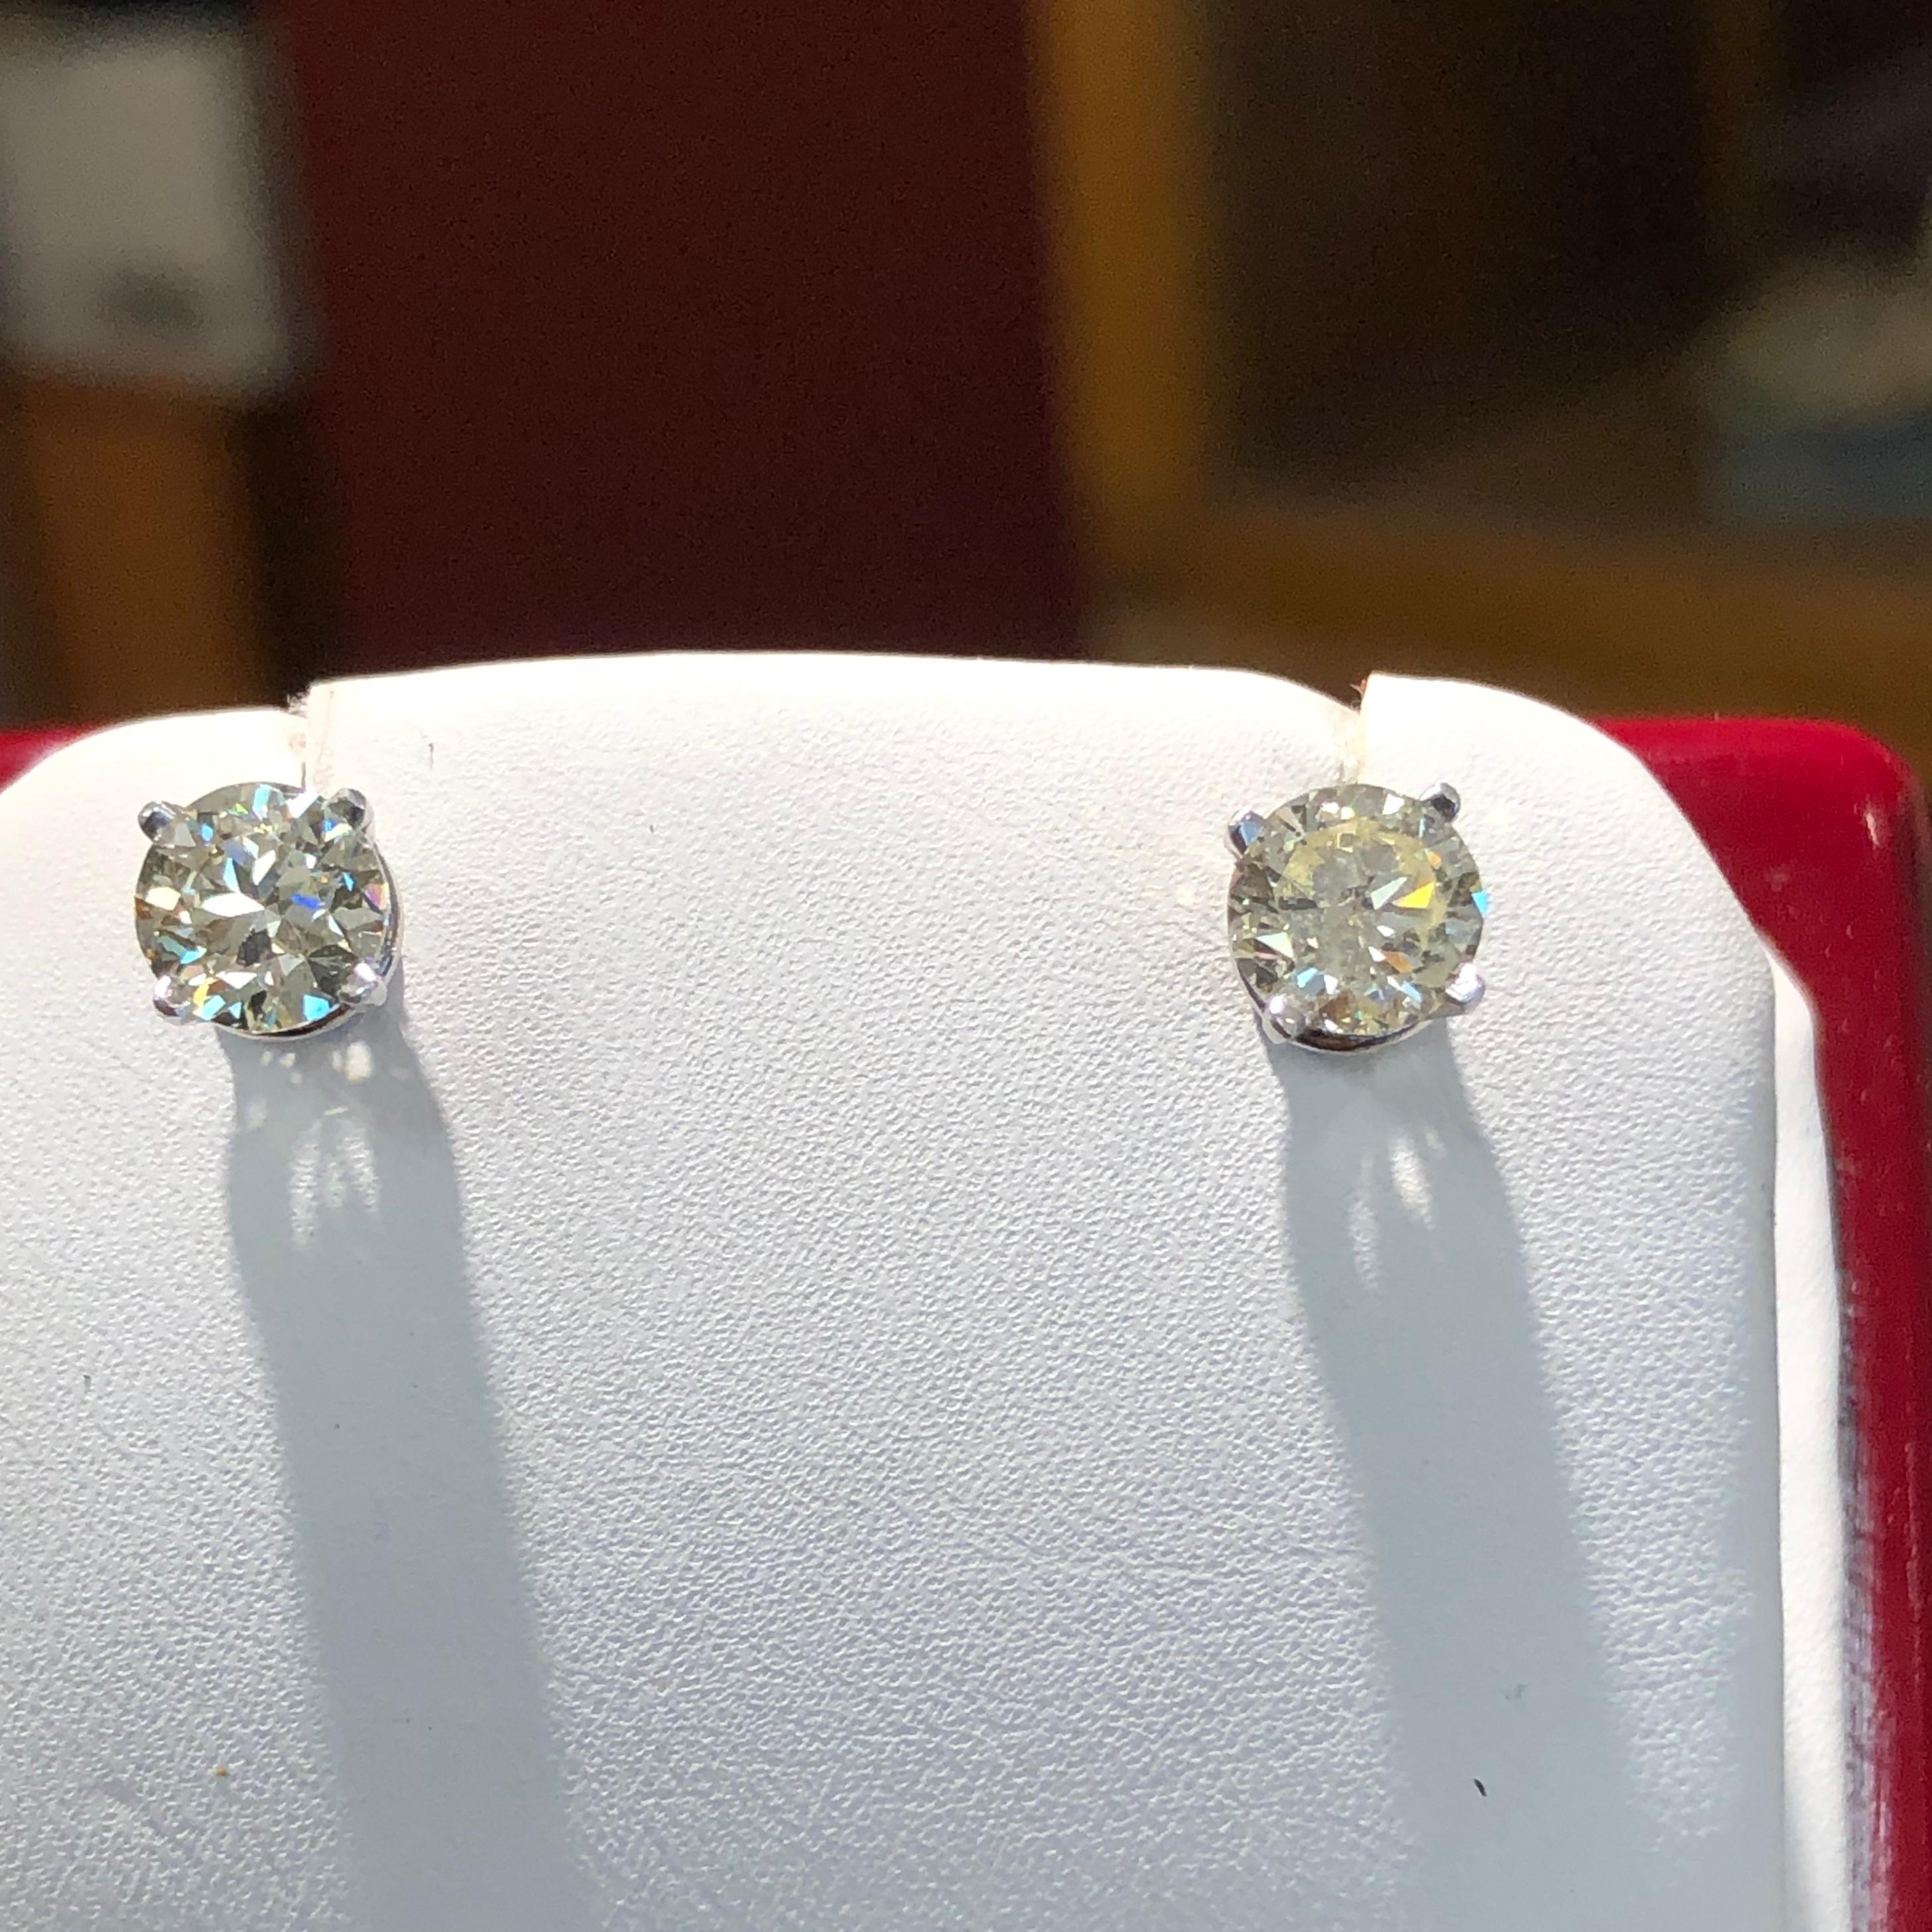 Diese GIA-Diamant Ohrstecker verfügen über zwei passende perfekt natürliche Diamanten Gesamtgewicht 2,01 Karat, Farbe O-P-Bereich, Klarheit SI1 runden Brillantschliff. Jeder Stein ist in einer offenen Fassung aus 14er Weißgold gefasst.
Neuer Condit
